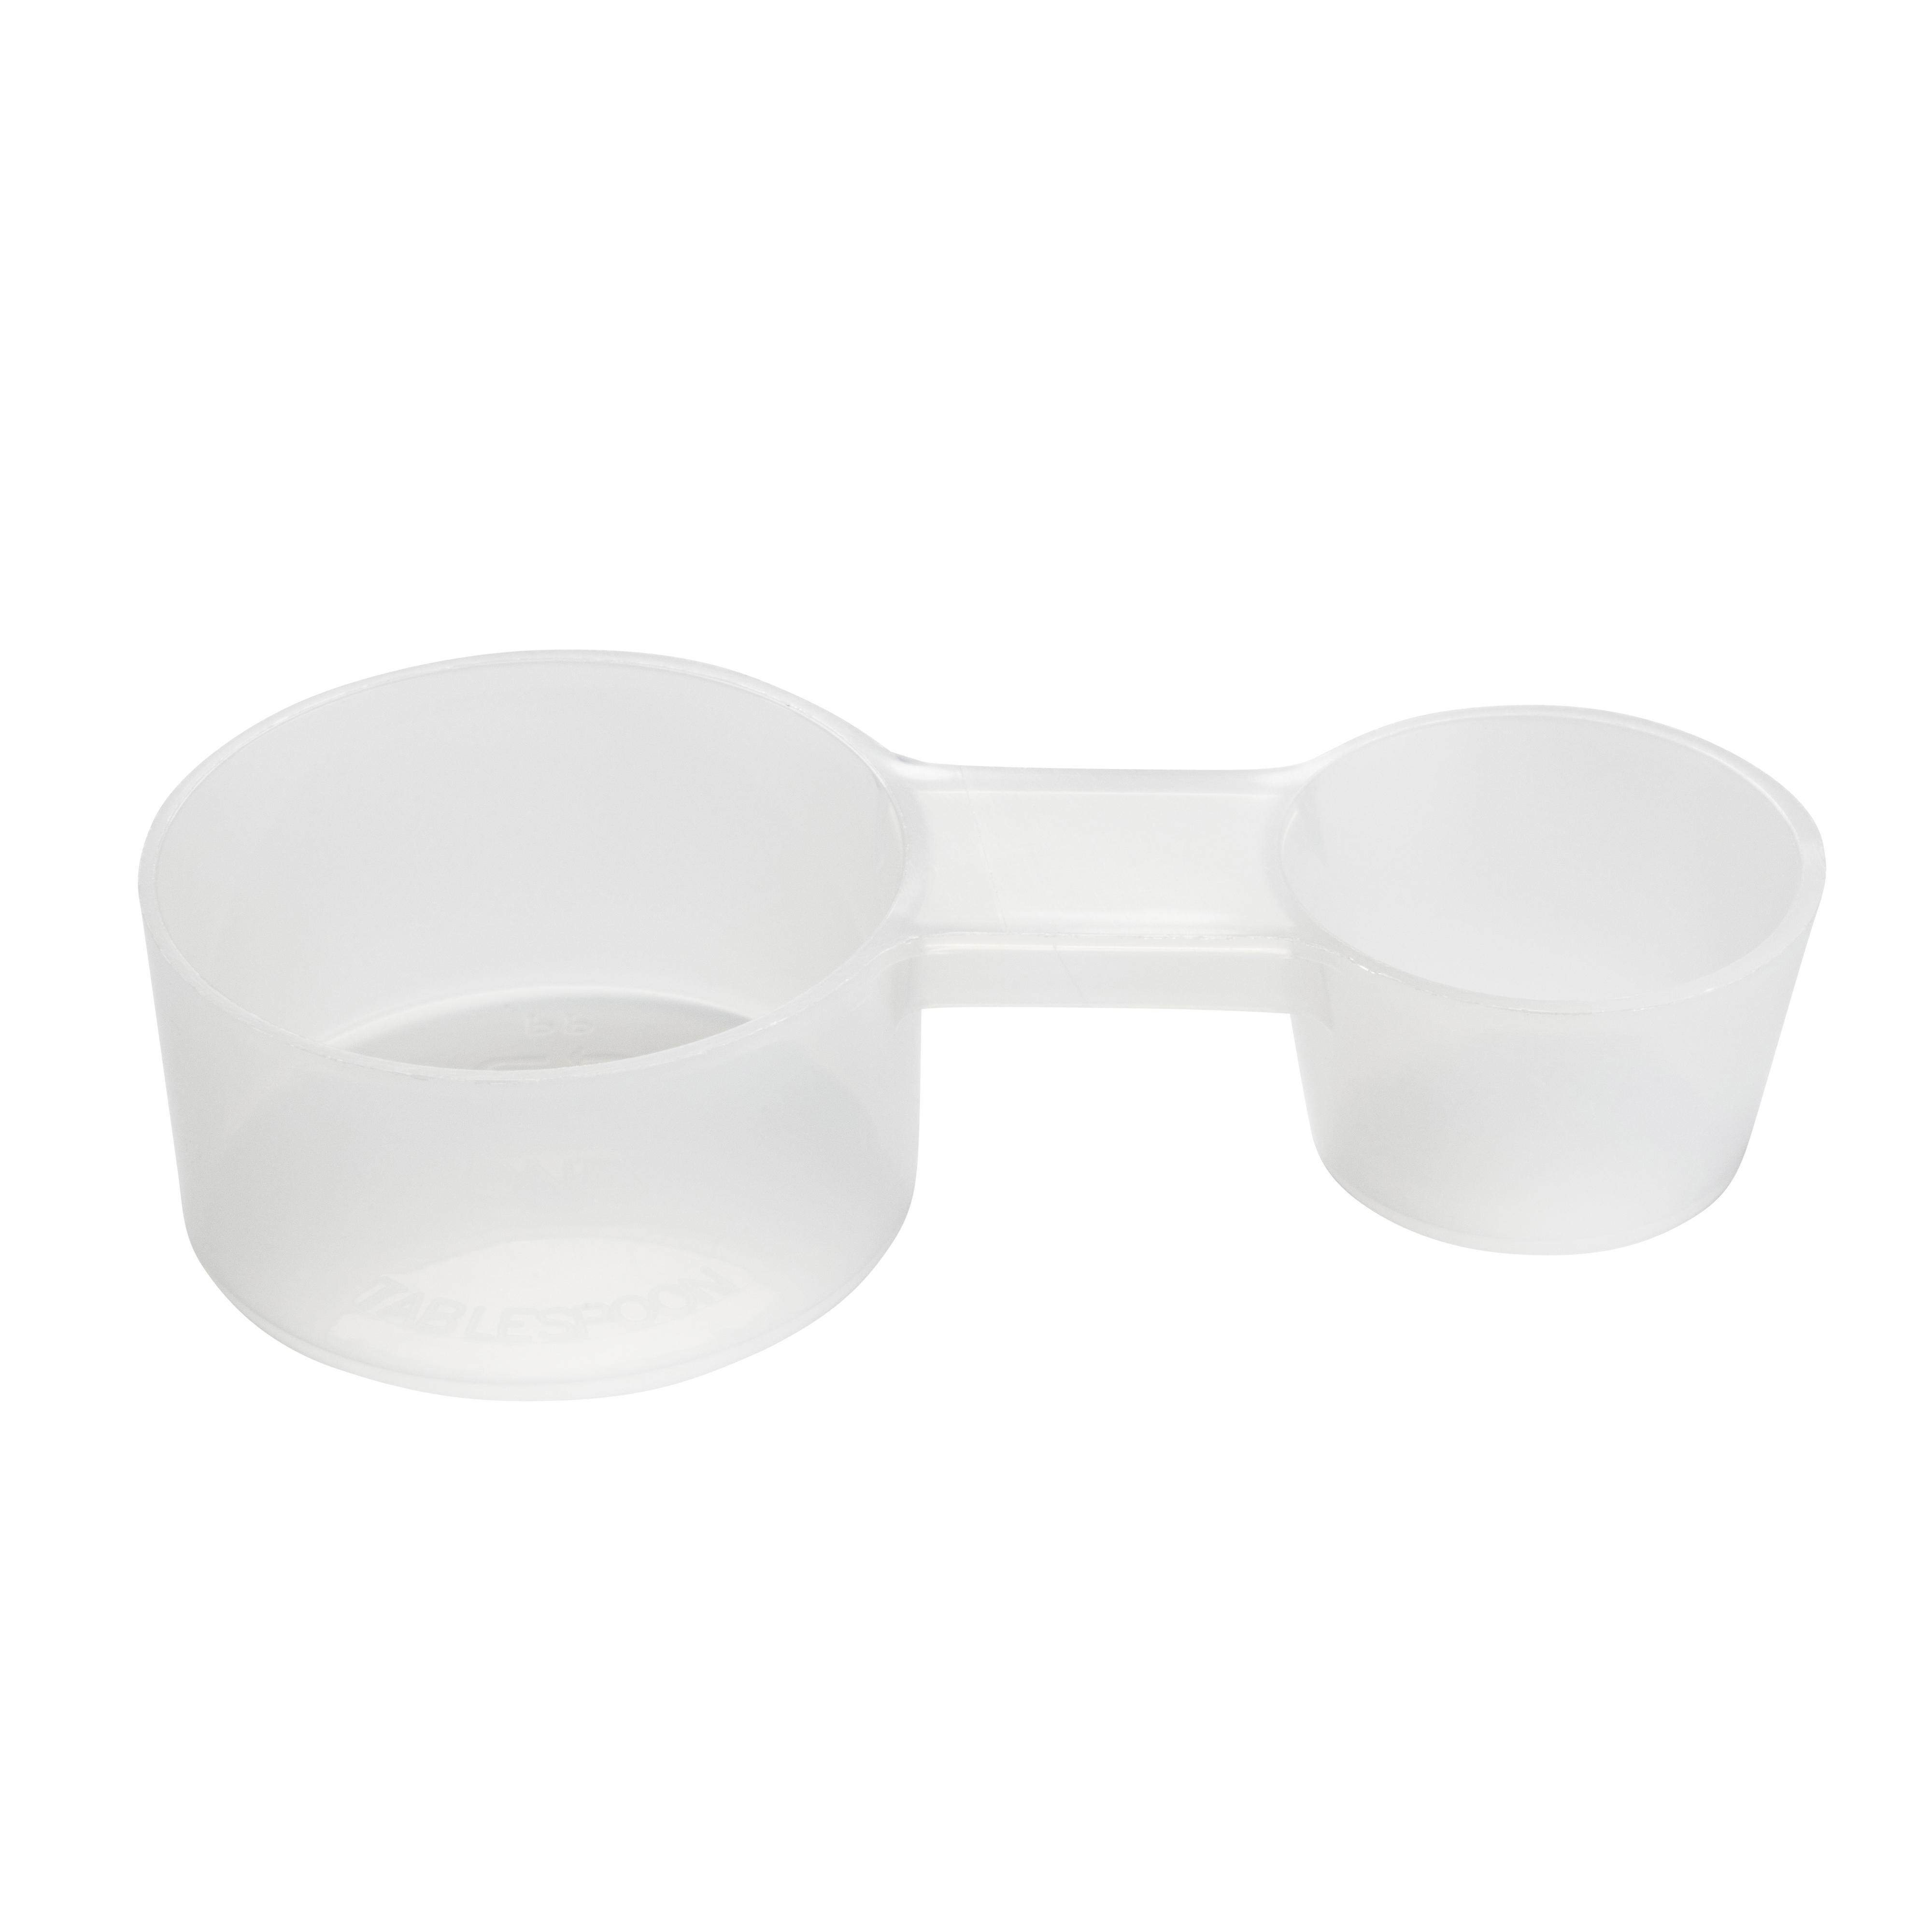 Plastic measuring cups